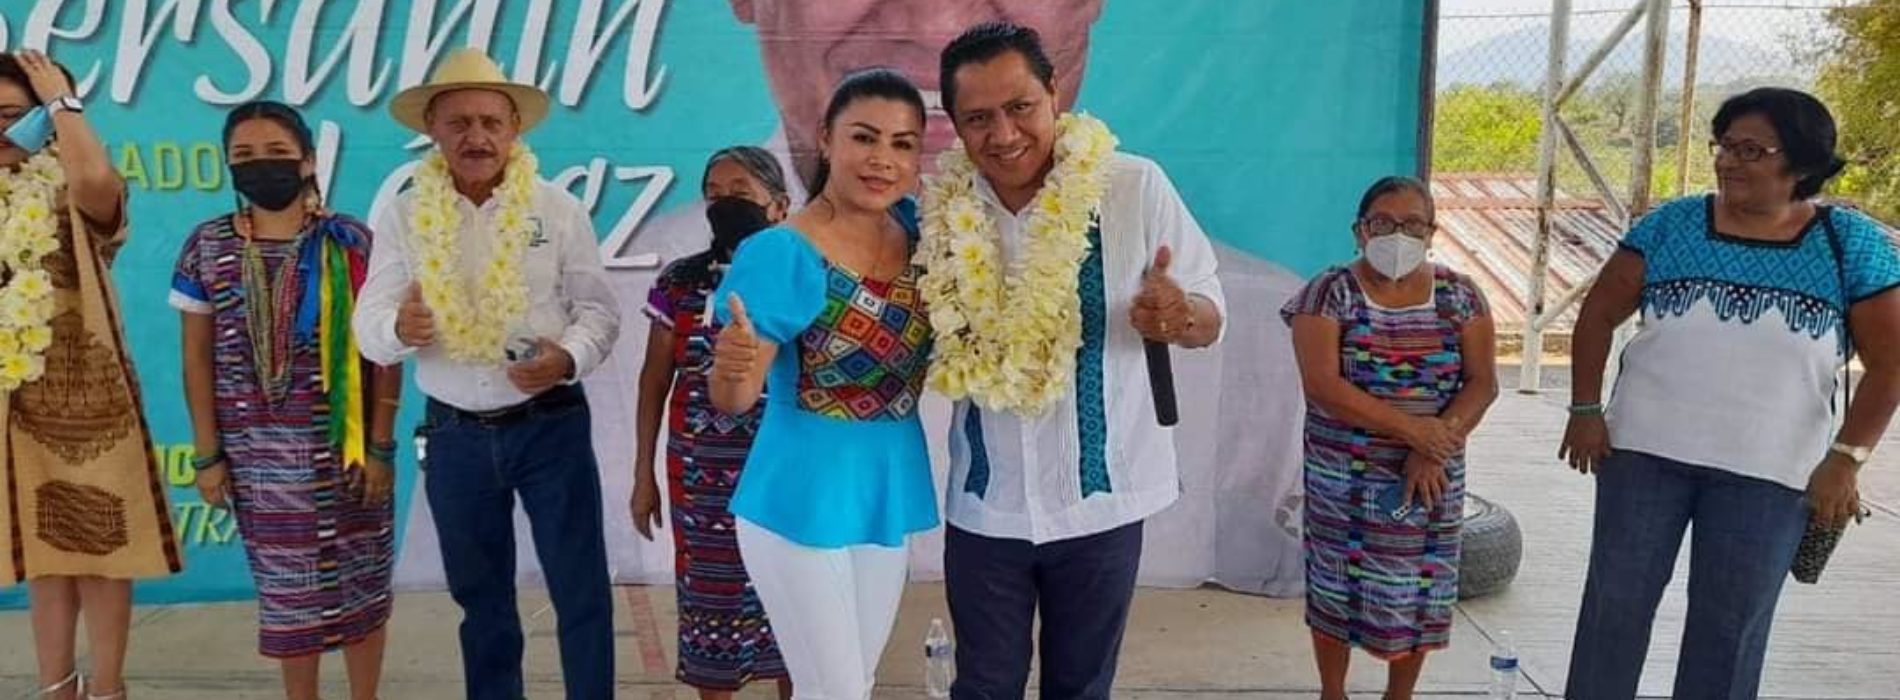 Nueva Alianza #Oaxaca gobernará para el pueblo: Bersahín López